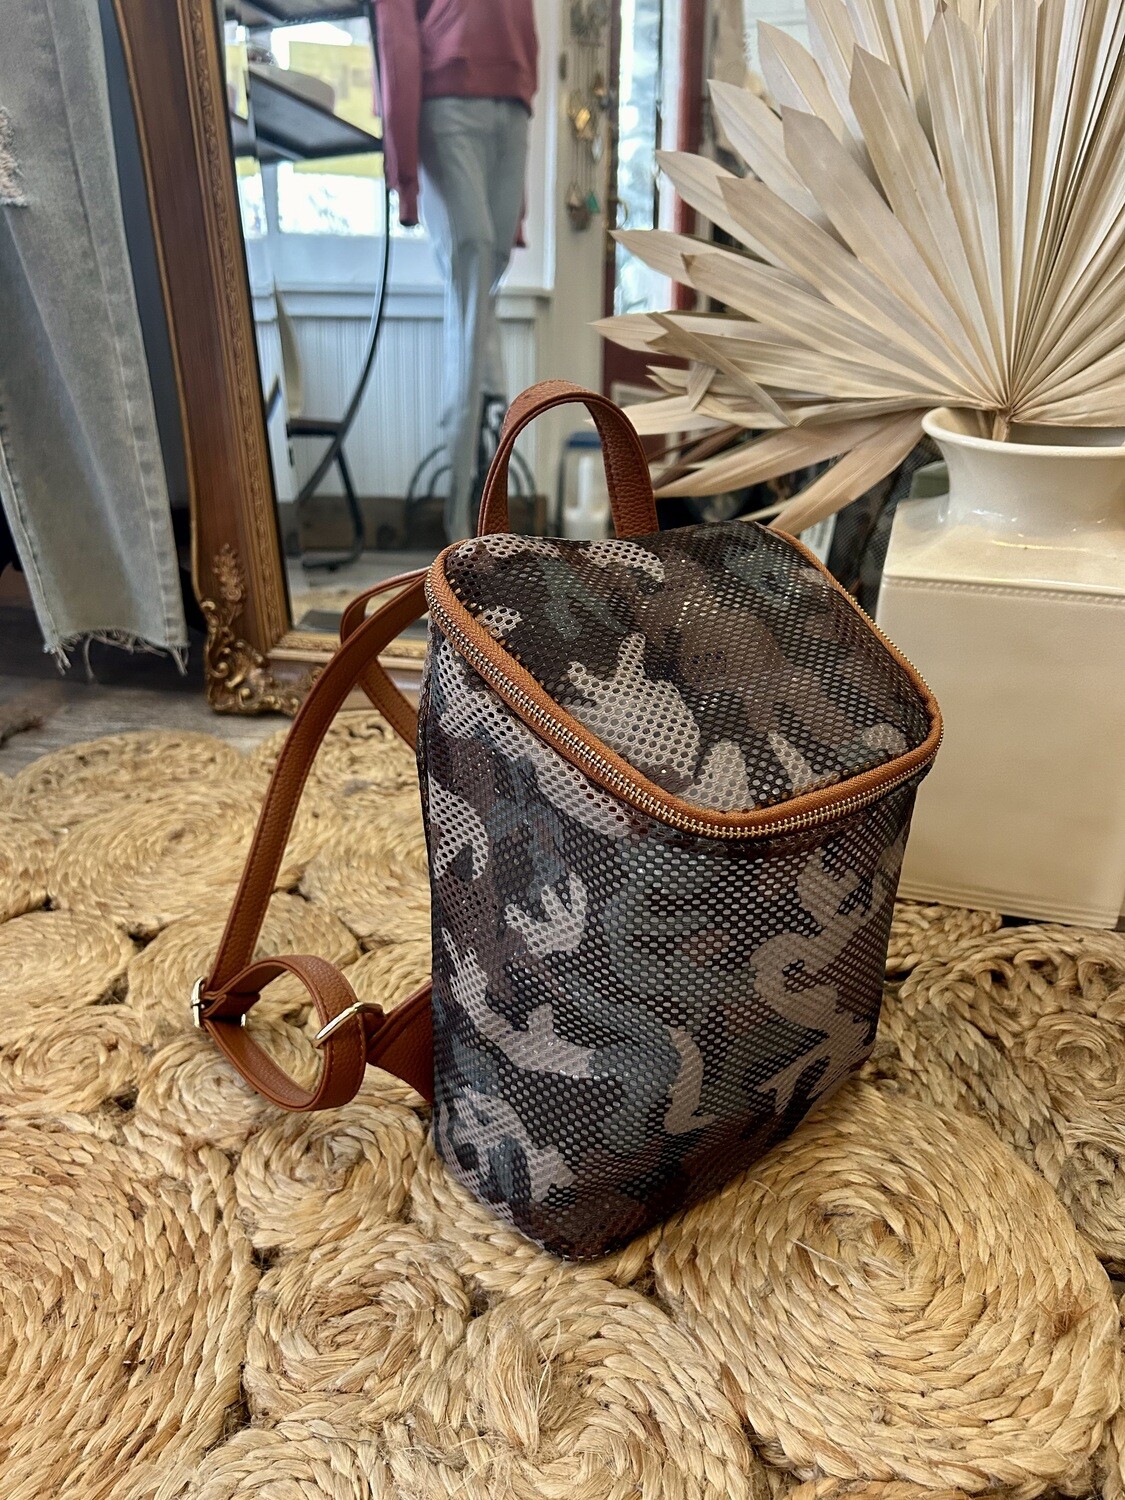 Mini Backpacks